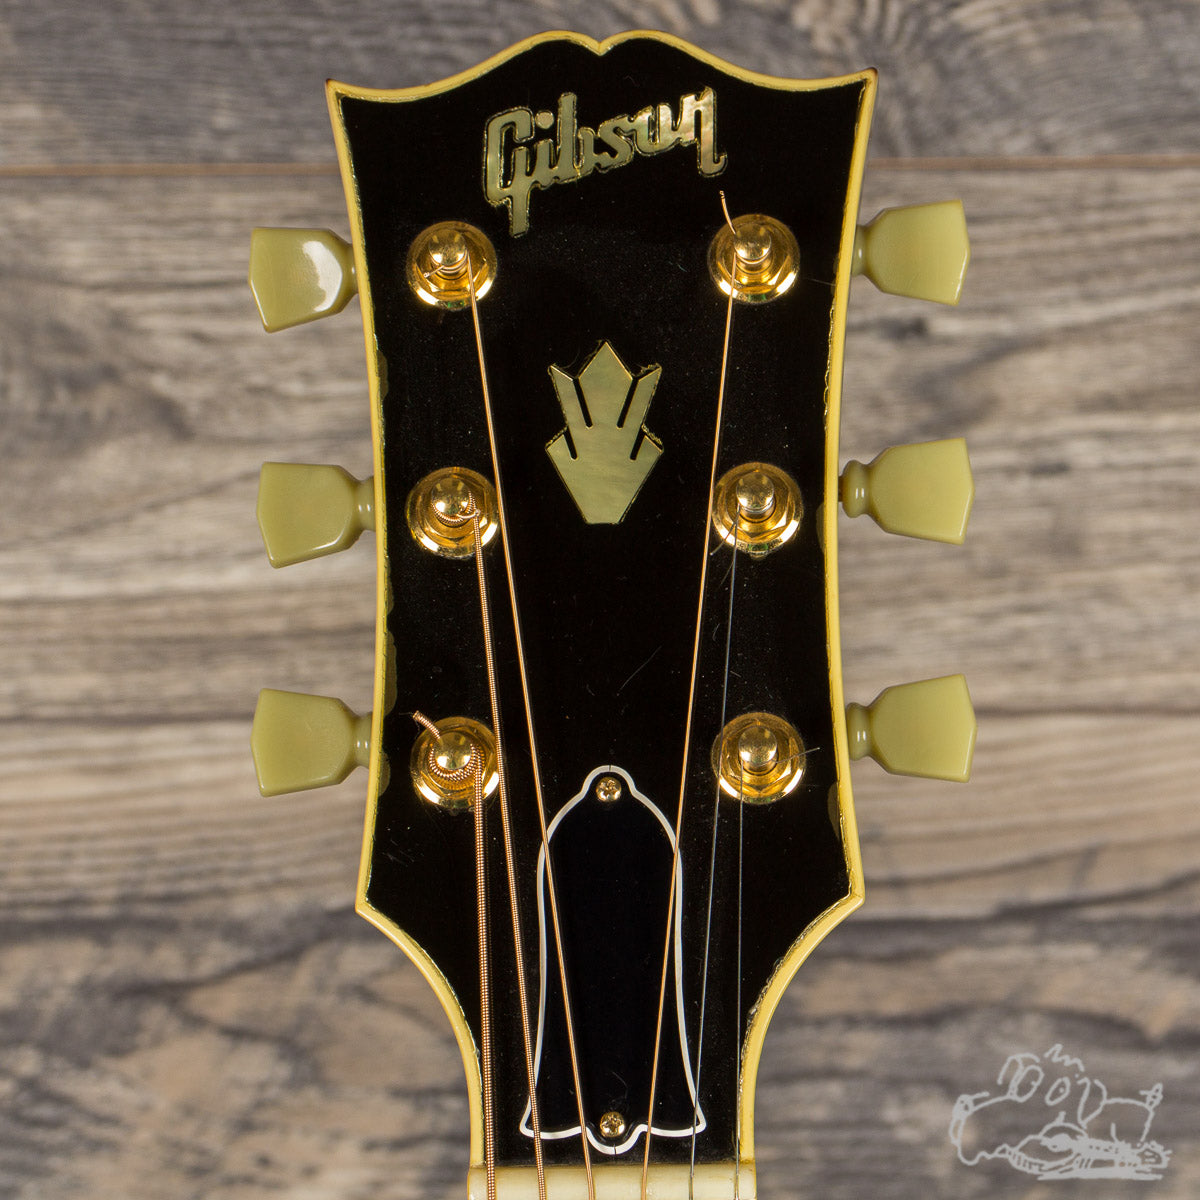 1991 Gibson J-200 Koa